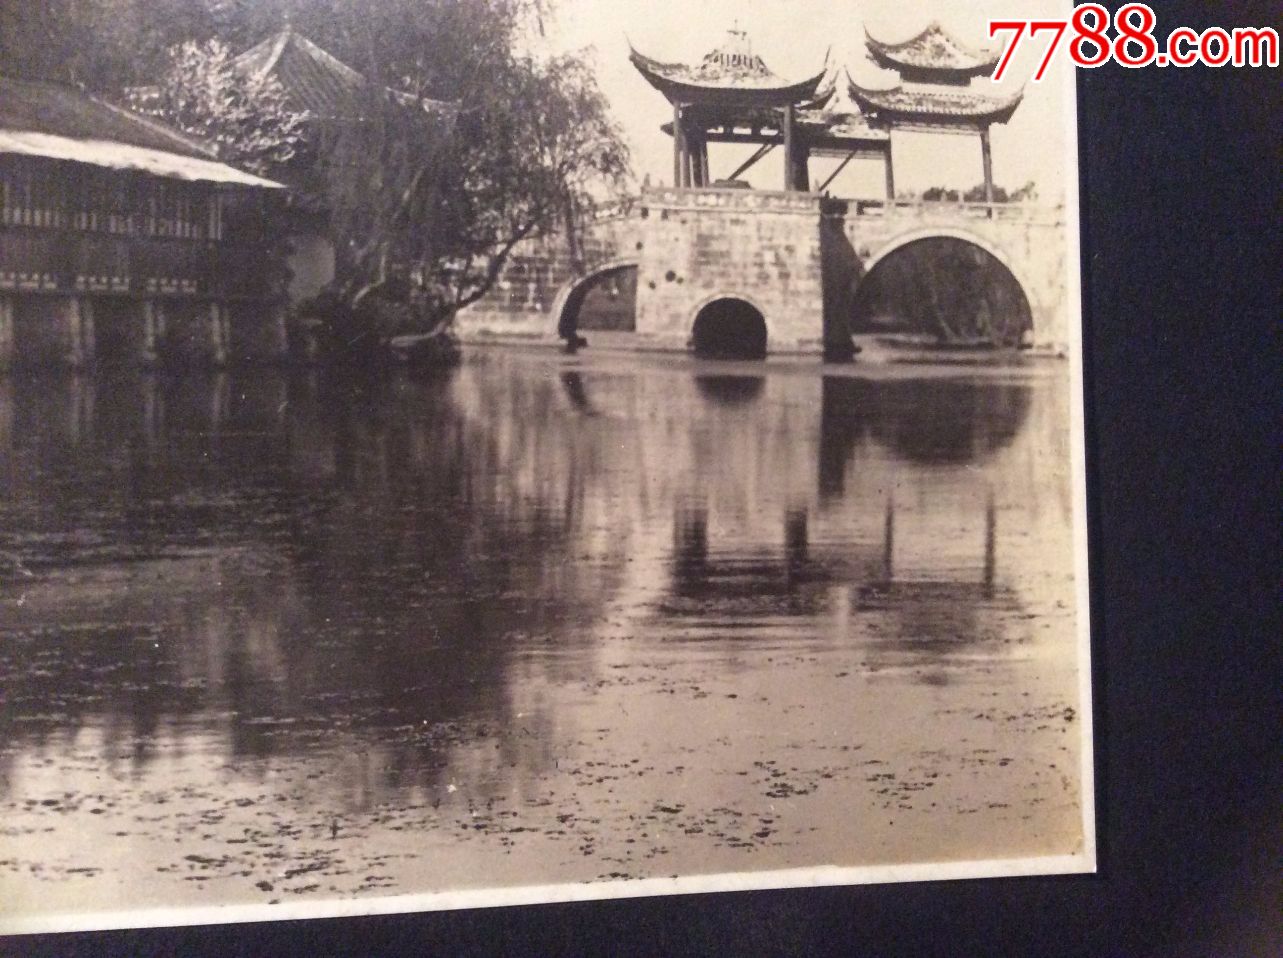 罕见扬州老照片!1935年左右的扬州瘦西湖,五亭桥残破不已!十分难得!